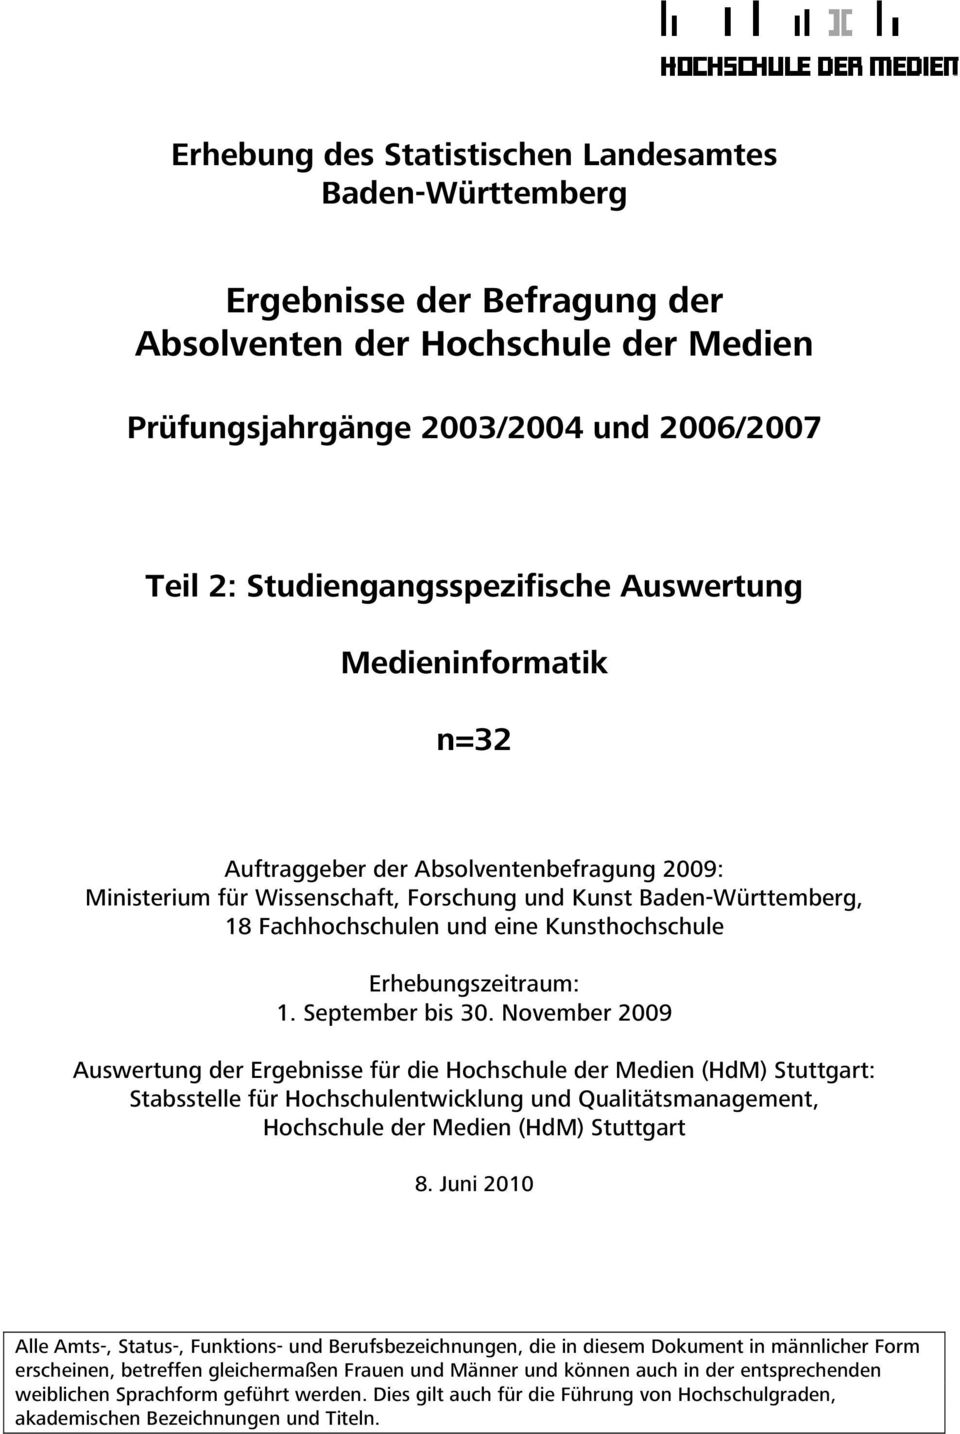 November 00 Auswertung der Ergebnisse für die Hochschule der Medien (HdM) Stuttgart: Stabsstelle für Hochschulentwicklung und Qualitätsmanagement, Hochschule der Medien (HdM) Stuttgart.